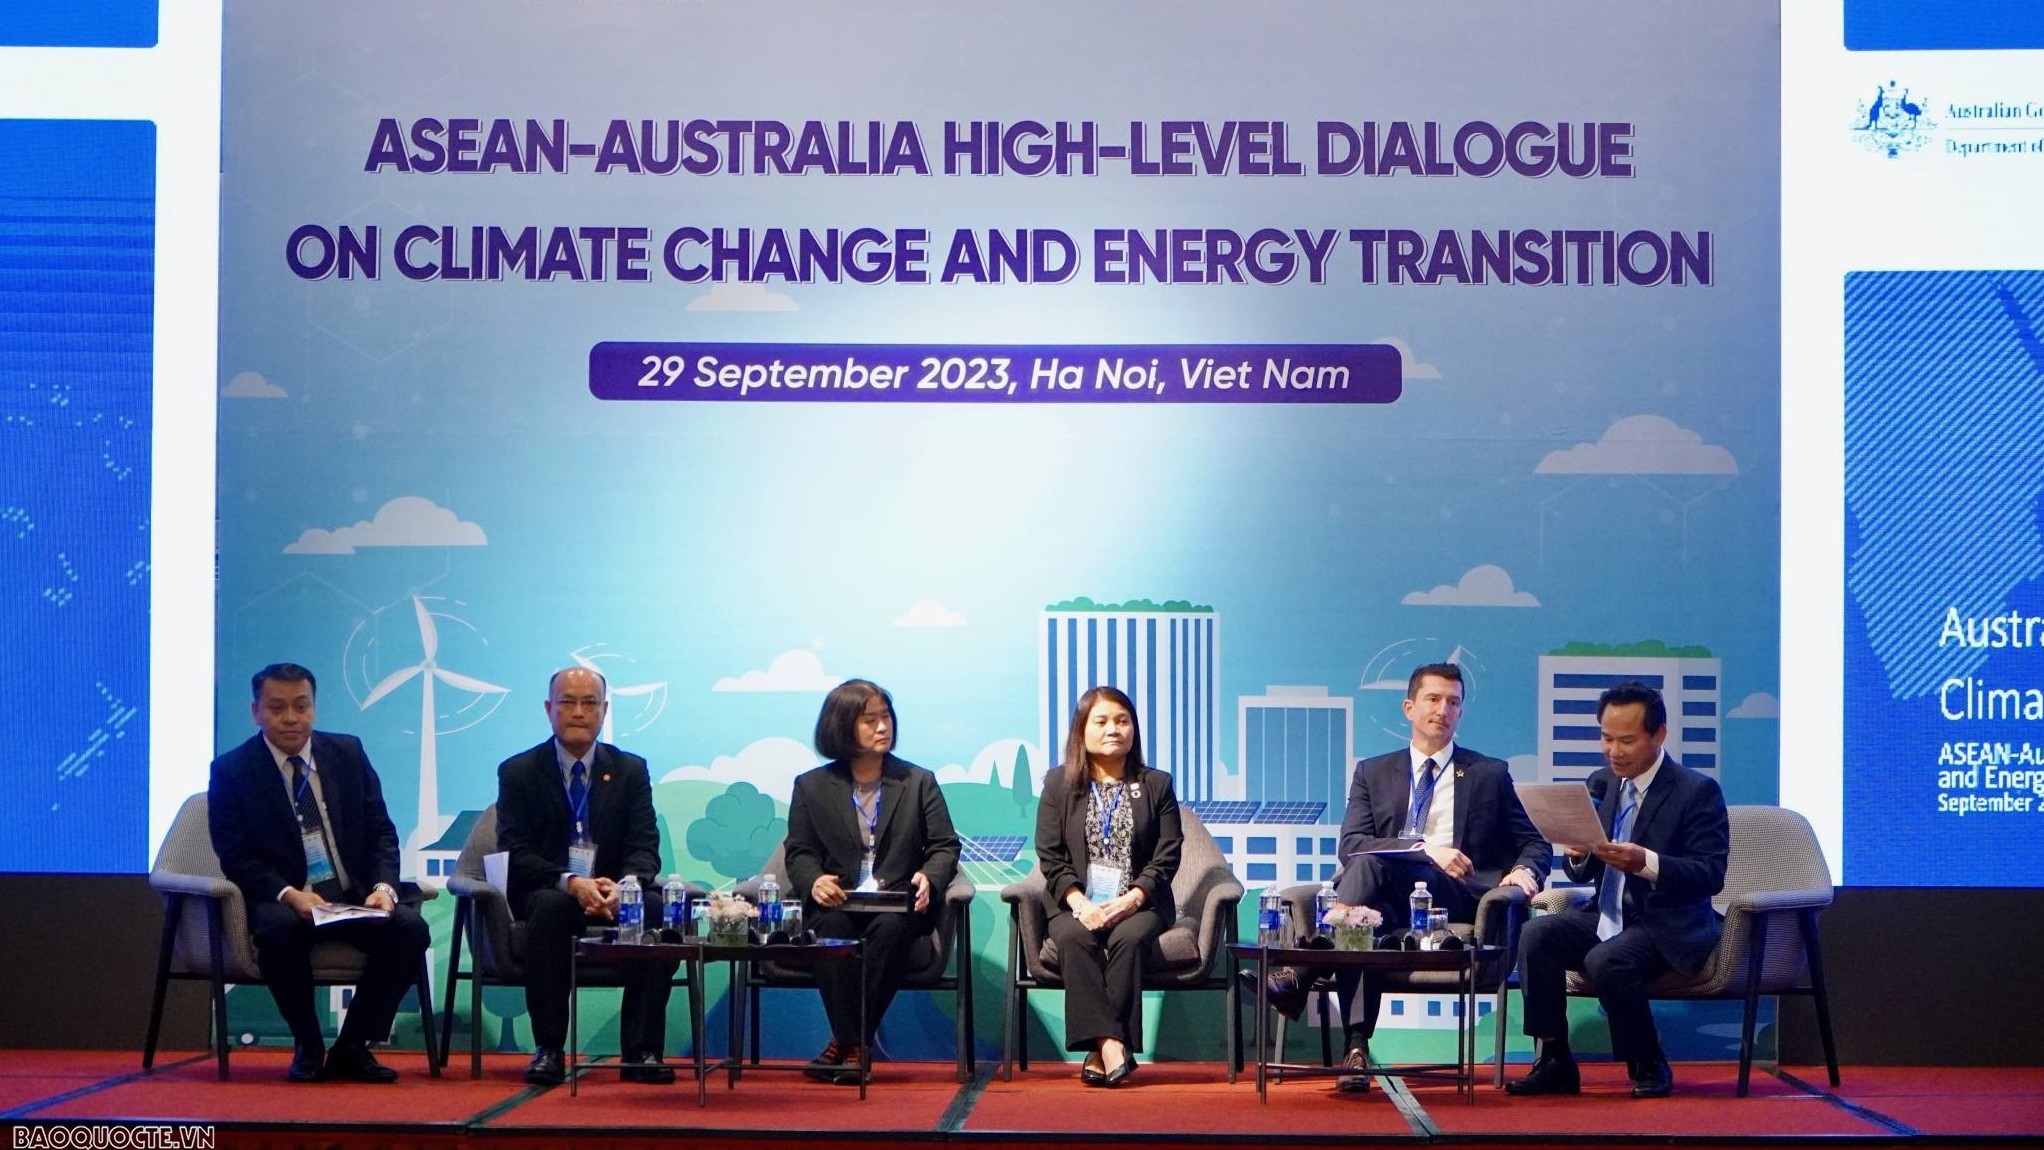 Australia coi ASEAN là đối tác ưu tiên về năng lượng sạch